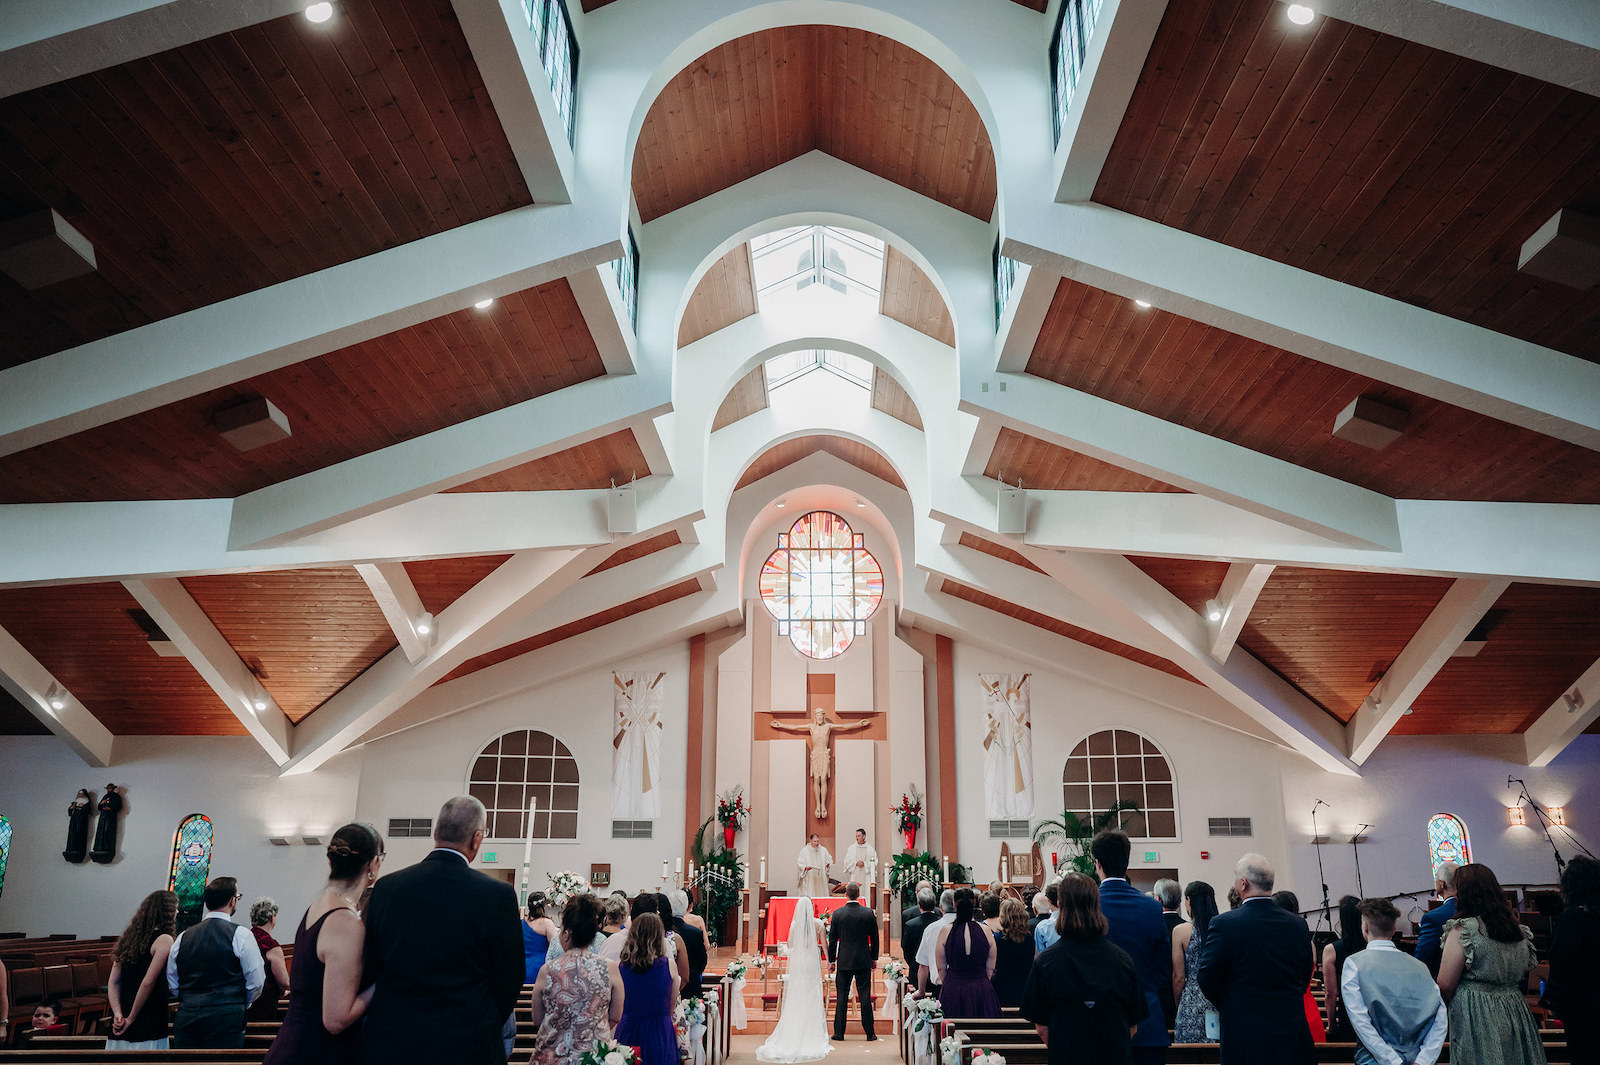 Church Wedding Ceremony Venue in Florida | Bride and Groom Exchange Vows Wedding Portrait